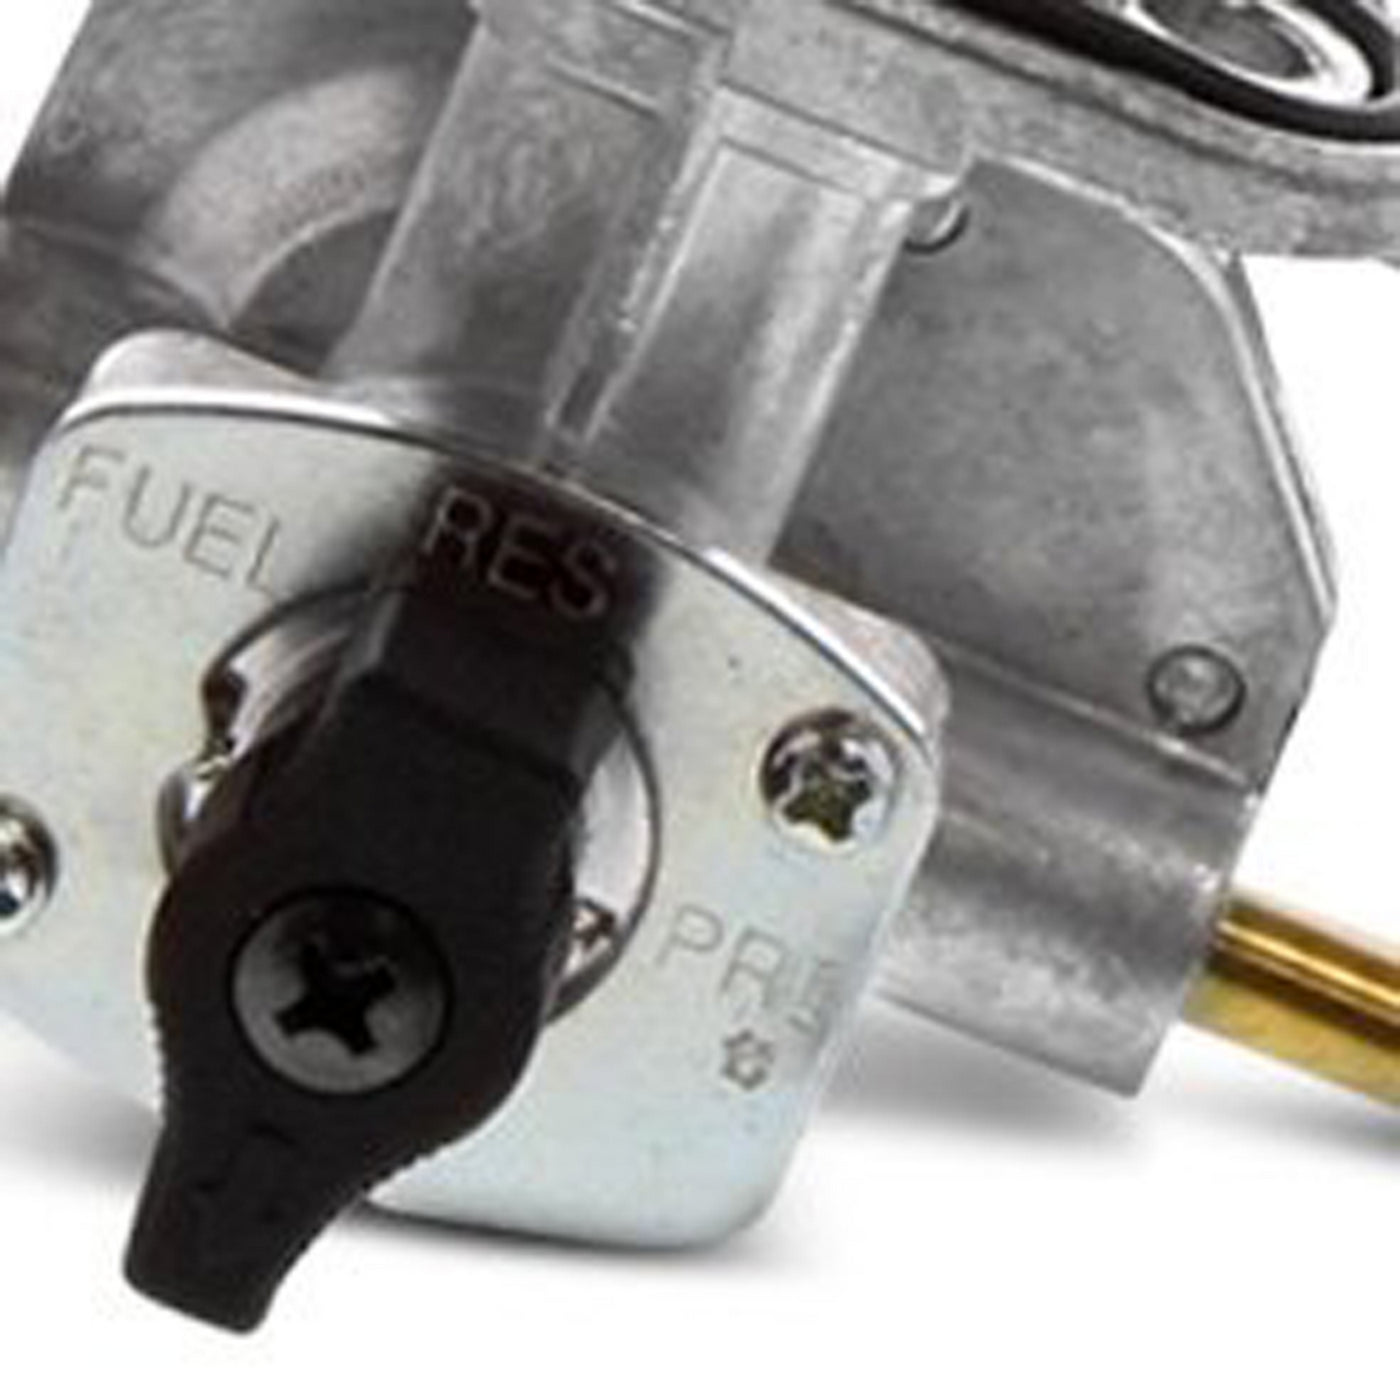 Fuel Star FS101-0121 Fuel Valve Kit #FS101-0121